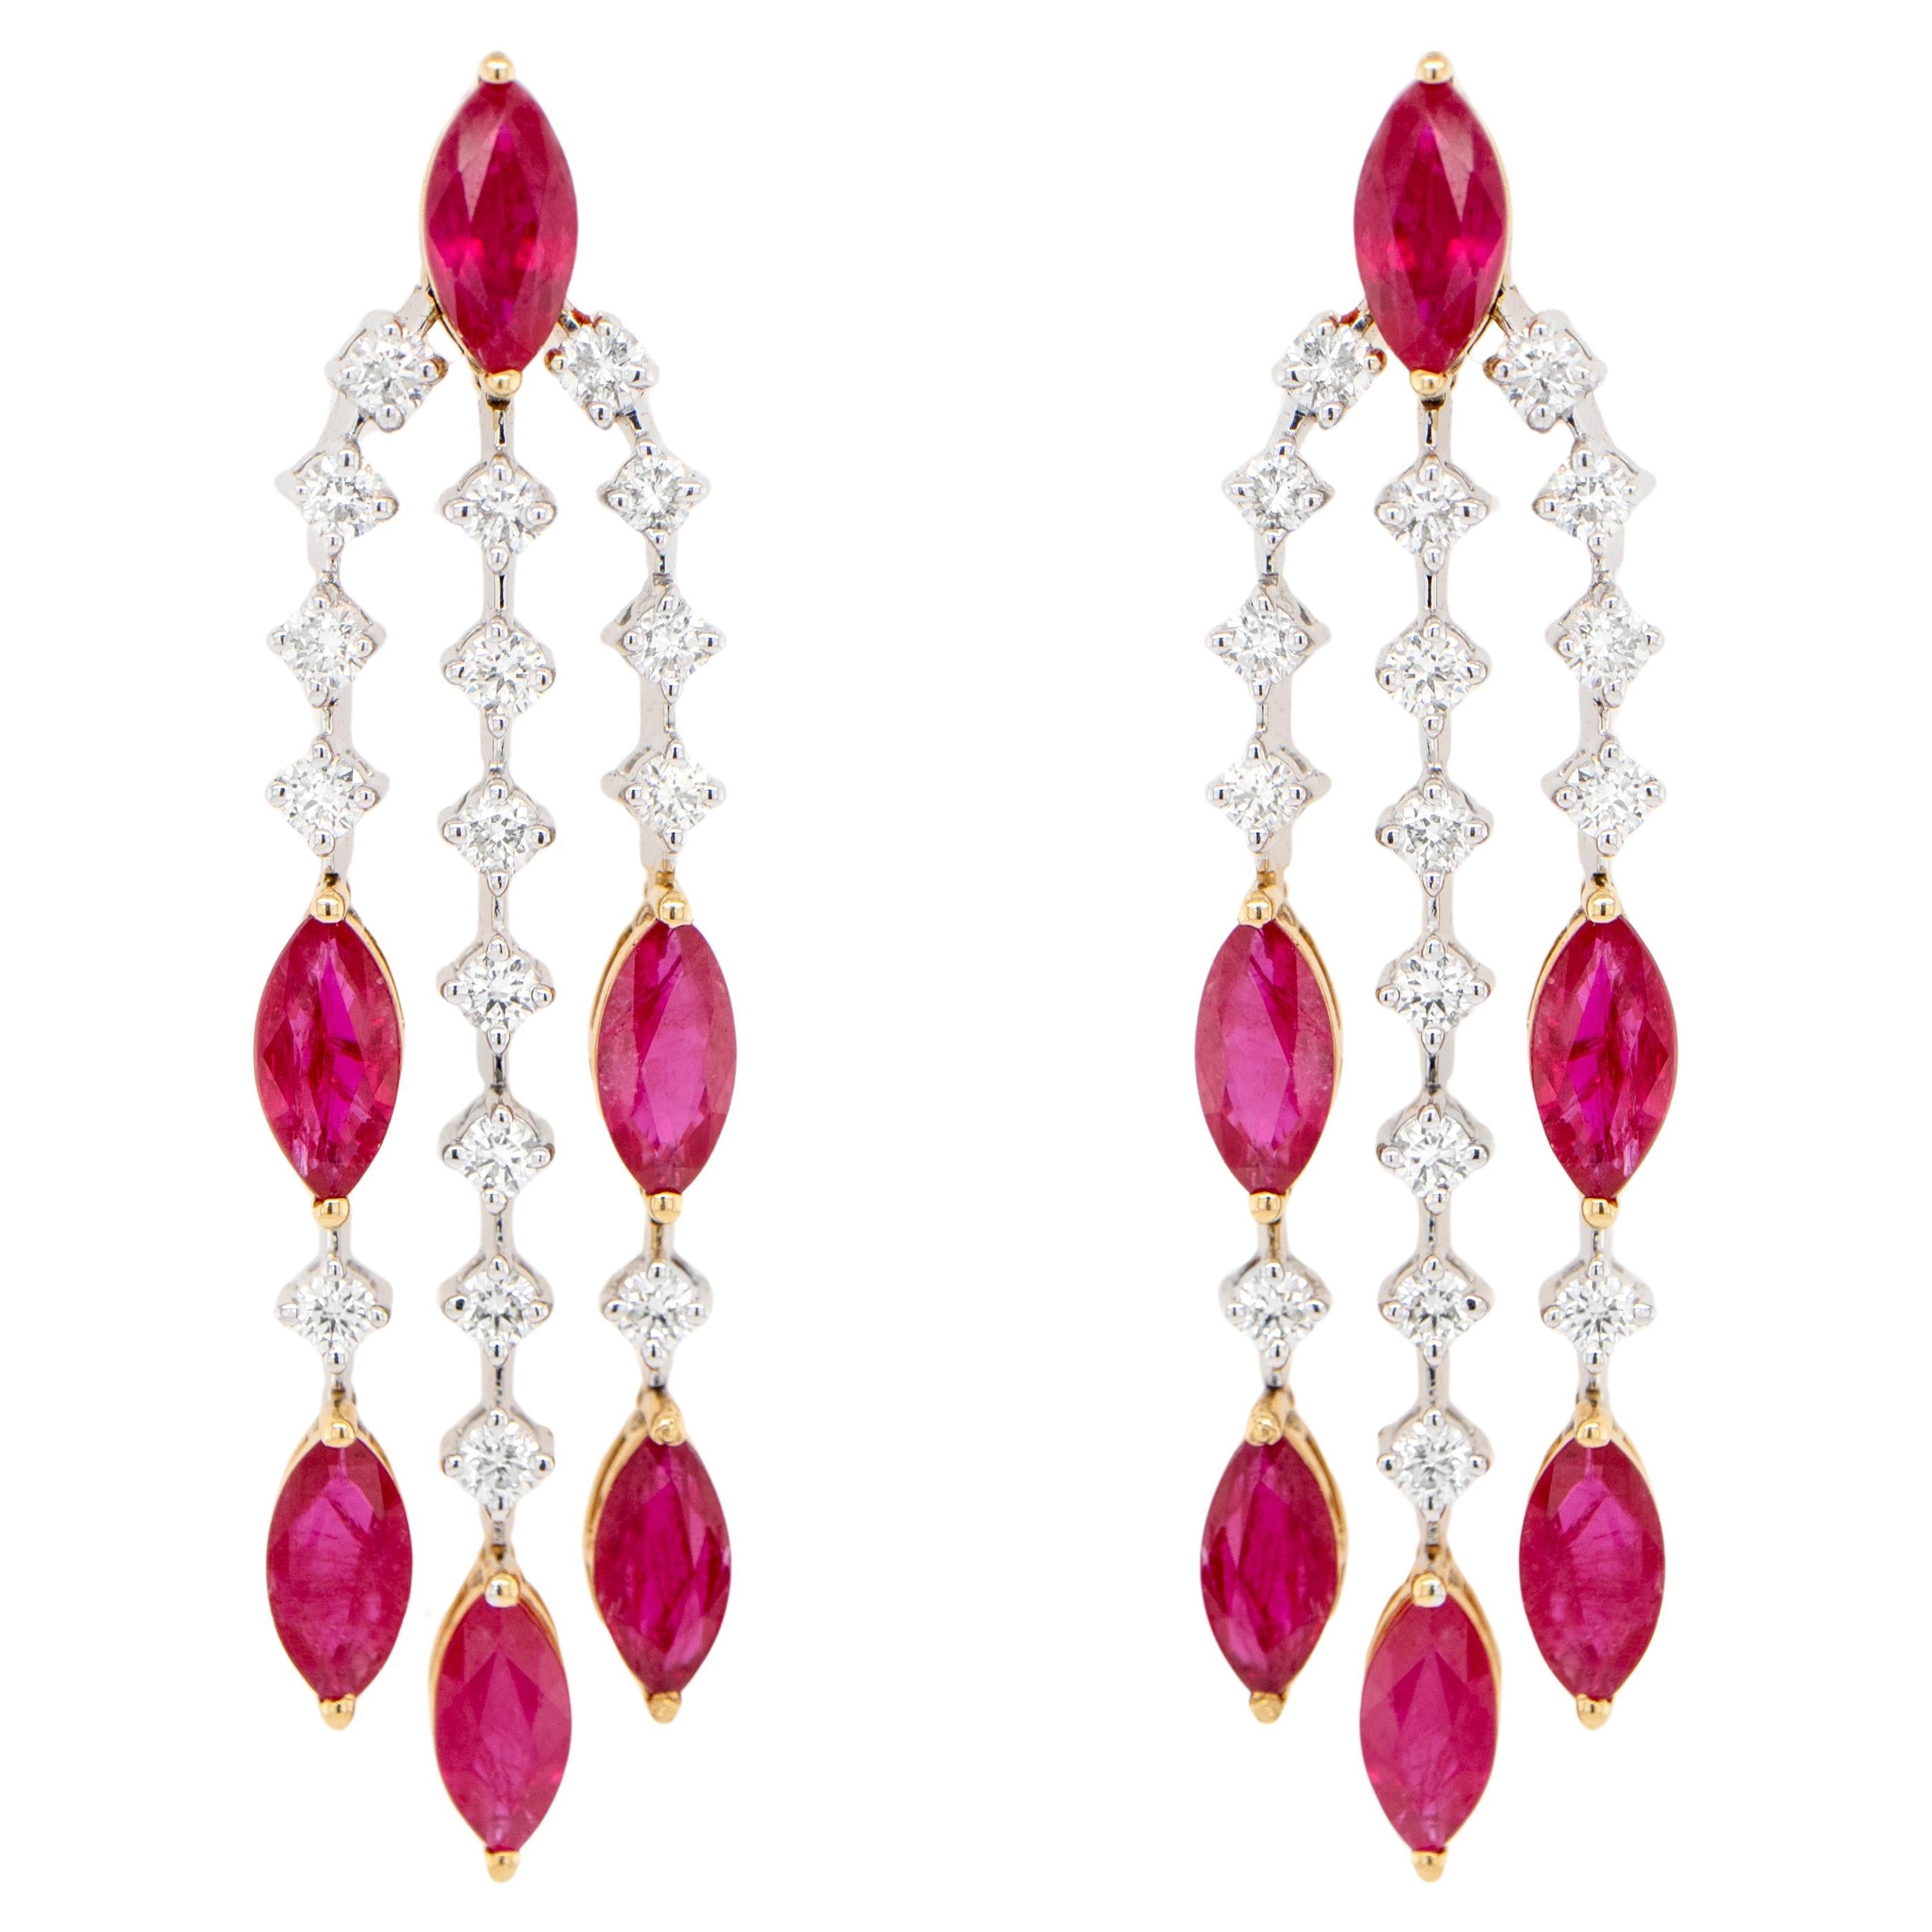 Boucles d'oreilles lustre en or 18 carats, rubis et diamants 5,4 carats